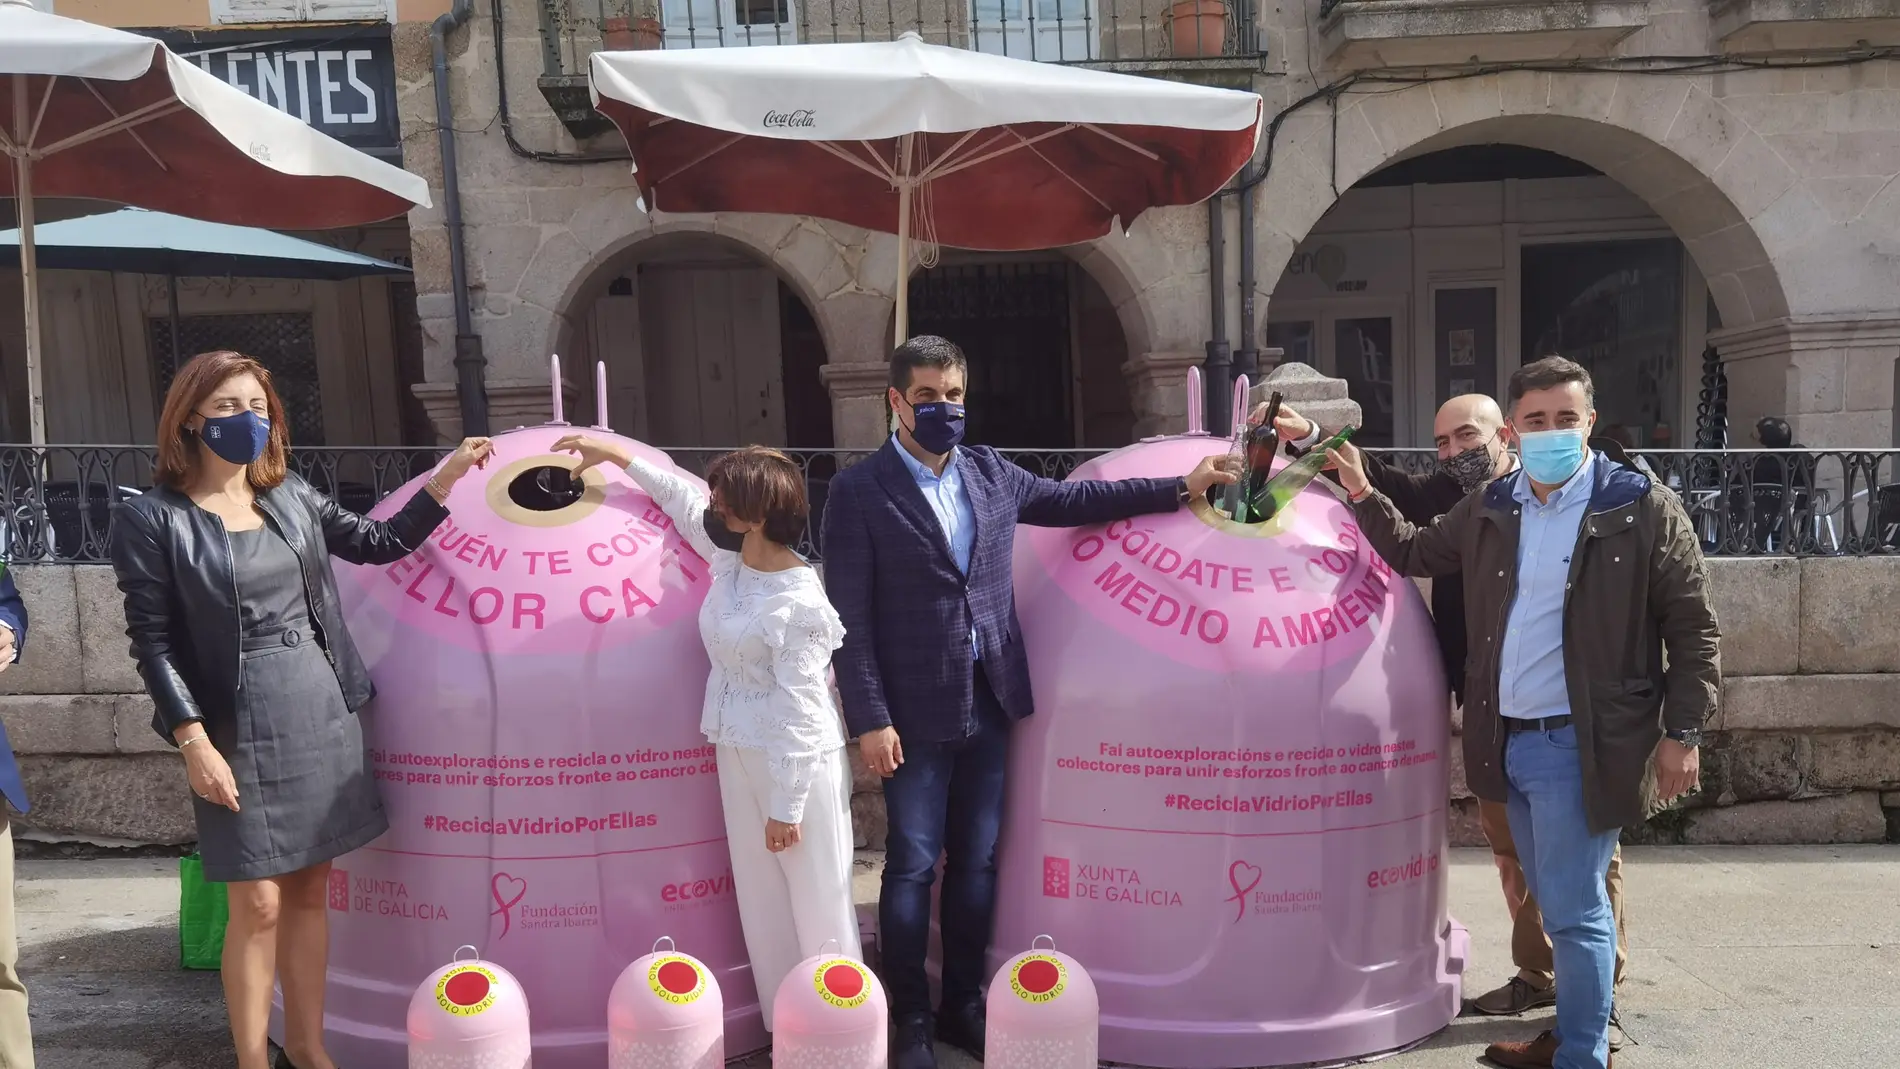 Ecovidrio presenta a campaña solidaria "Reciclo Vidrio por elas" 